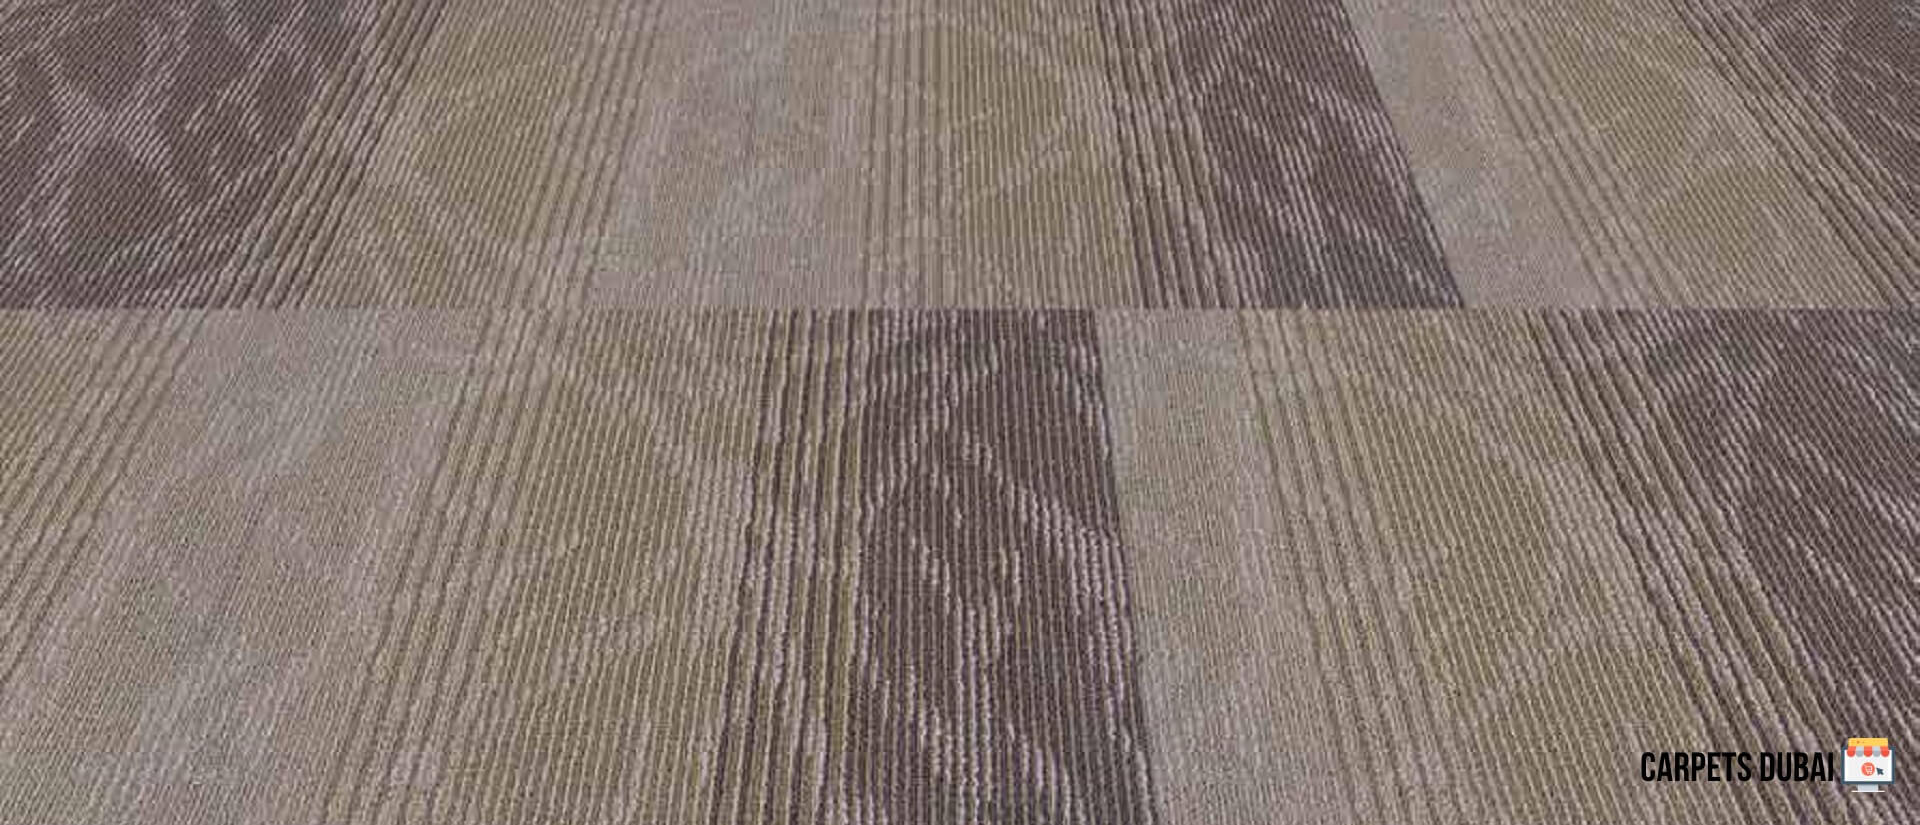 Melrose Carpet tiles Sample